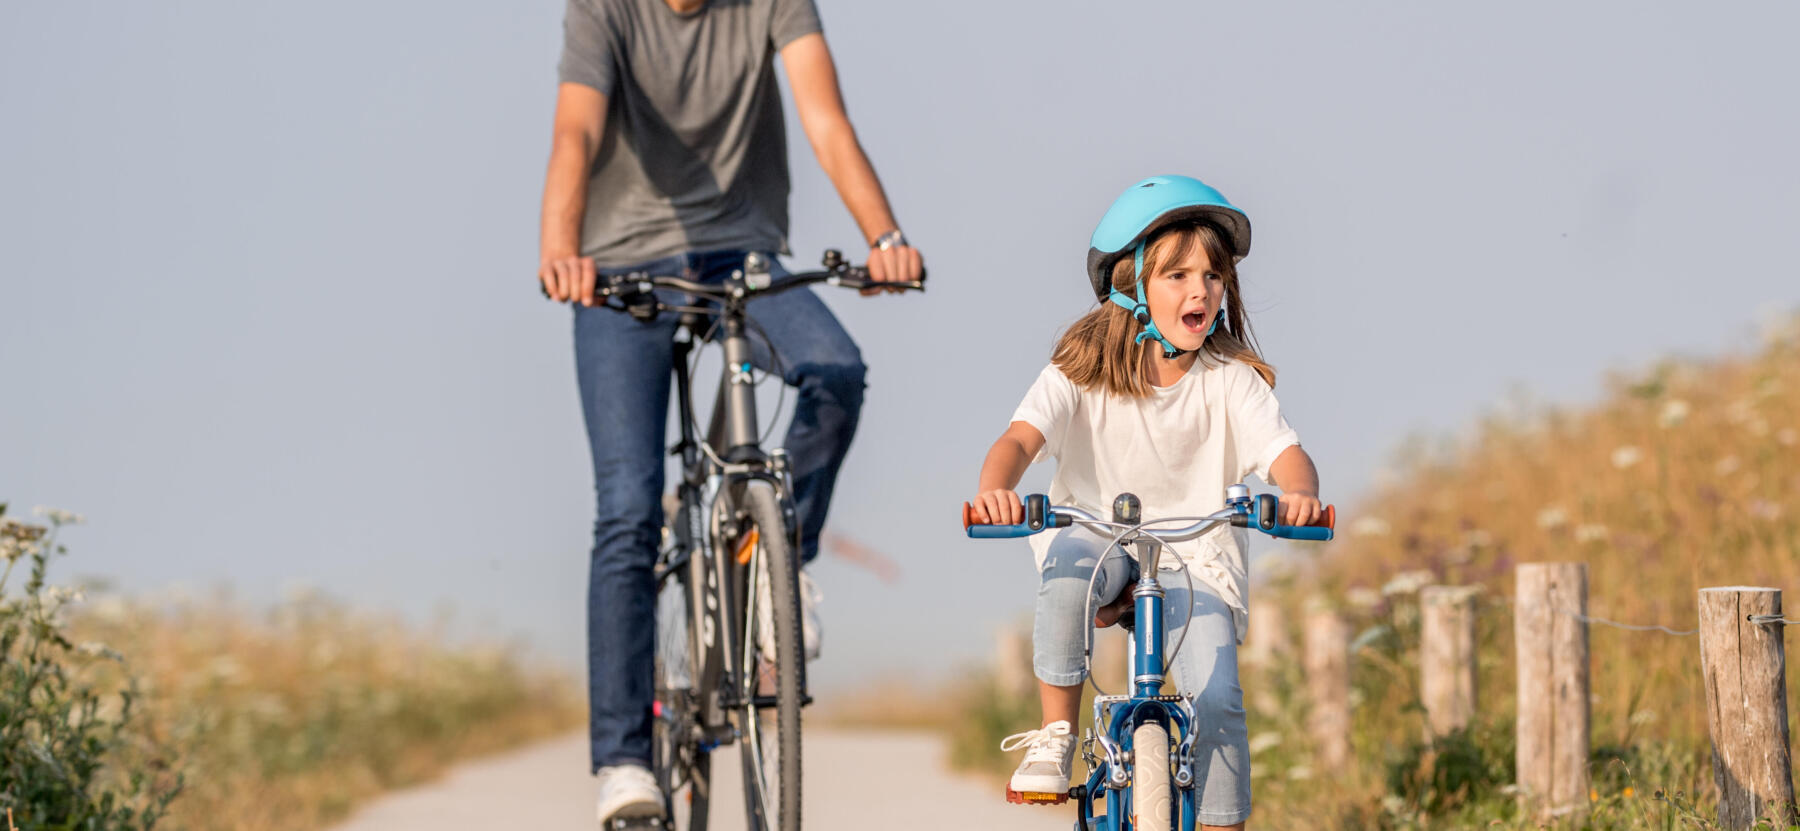 En vuxen och en flicka cyklar på en landsväg